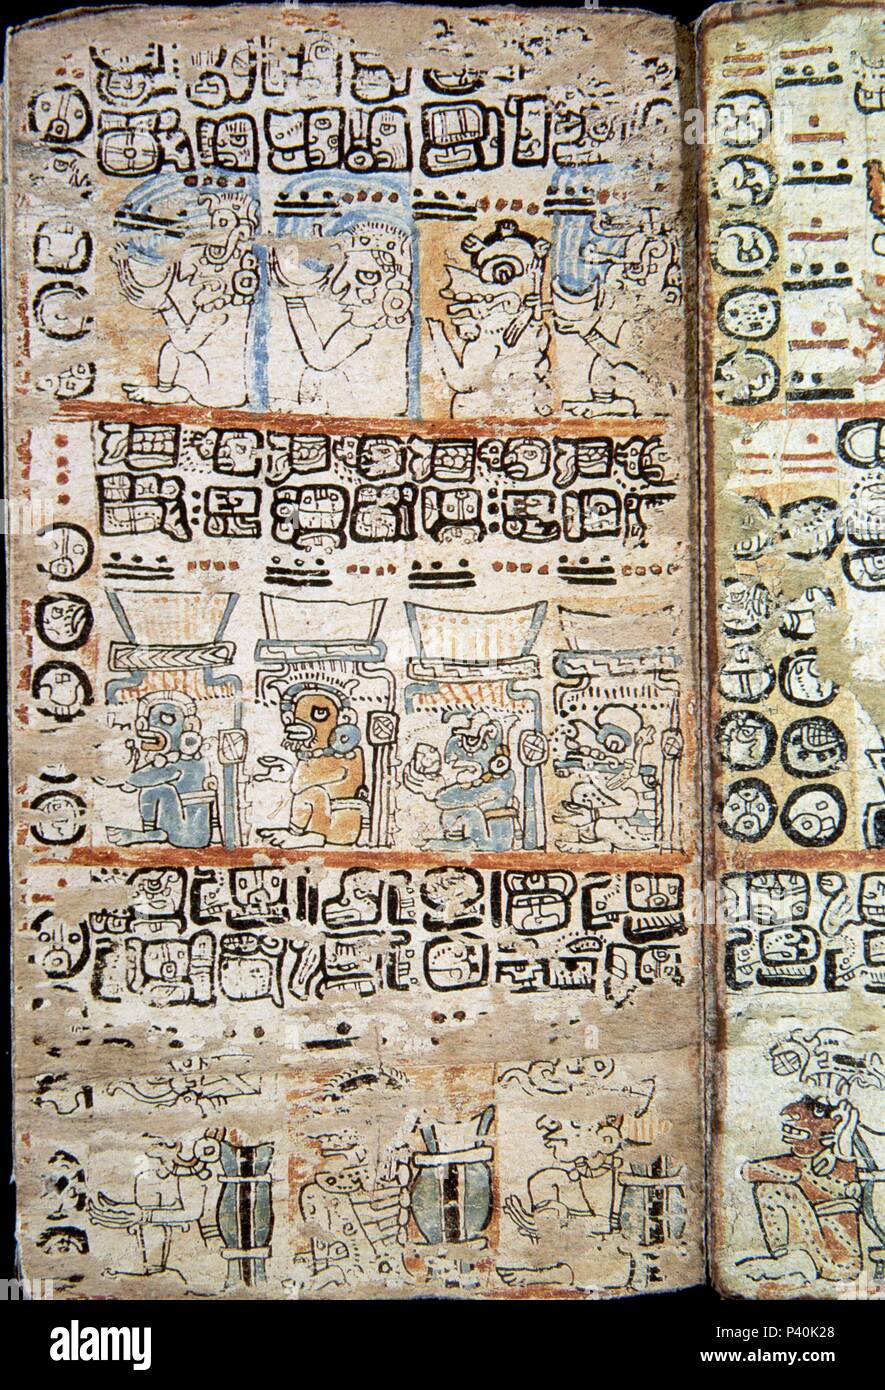 Page de la Codex Tro-Cortesianus. Par télécopieur. Page de la Codex Tro-Cortesianus. La culture maya. Les dieux et les hommes. 13e-15e siècles. Lieu : MUSÉE DE L'AMÉRIQUE - COLECCION, MADRID, ESPAGNE. Banque D'Images